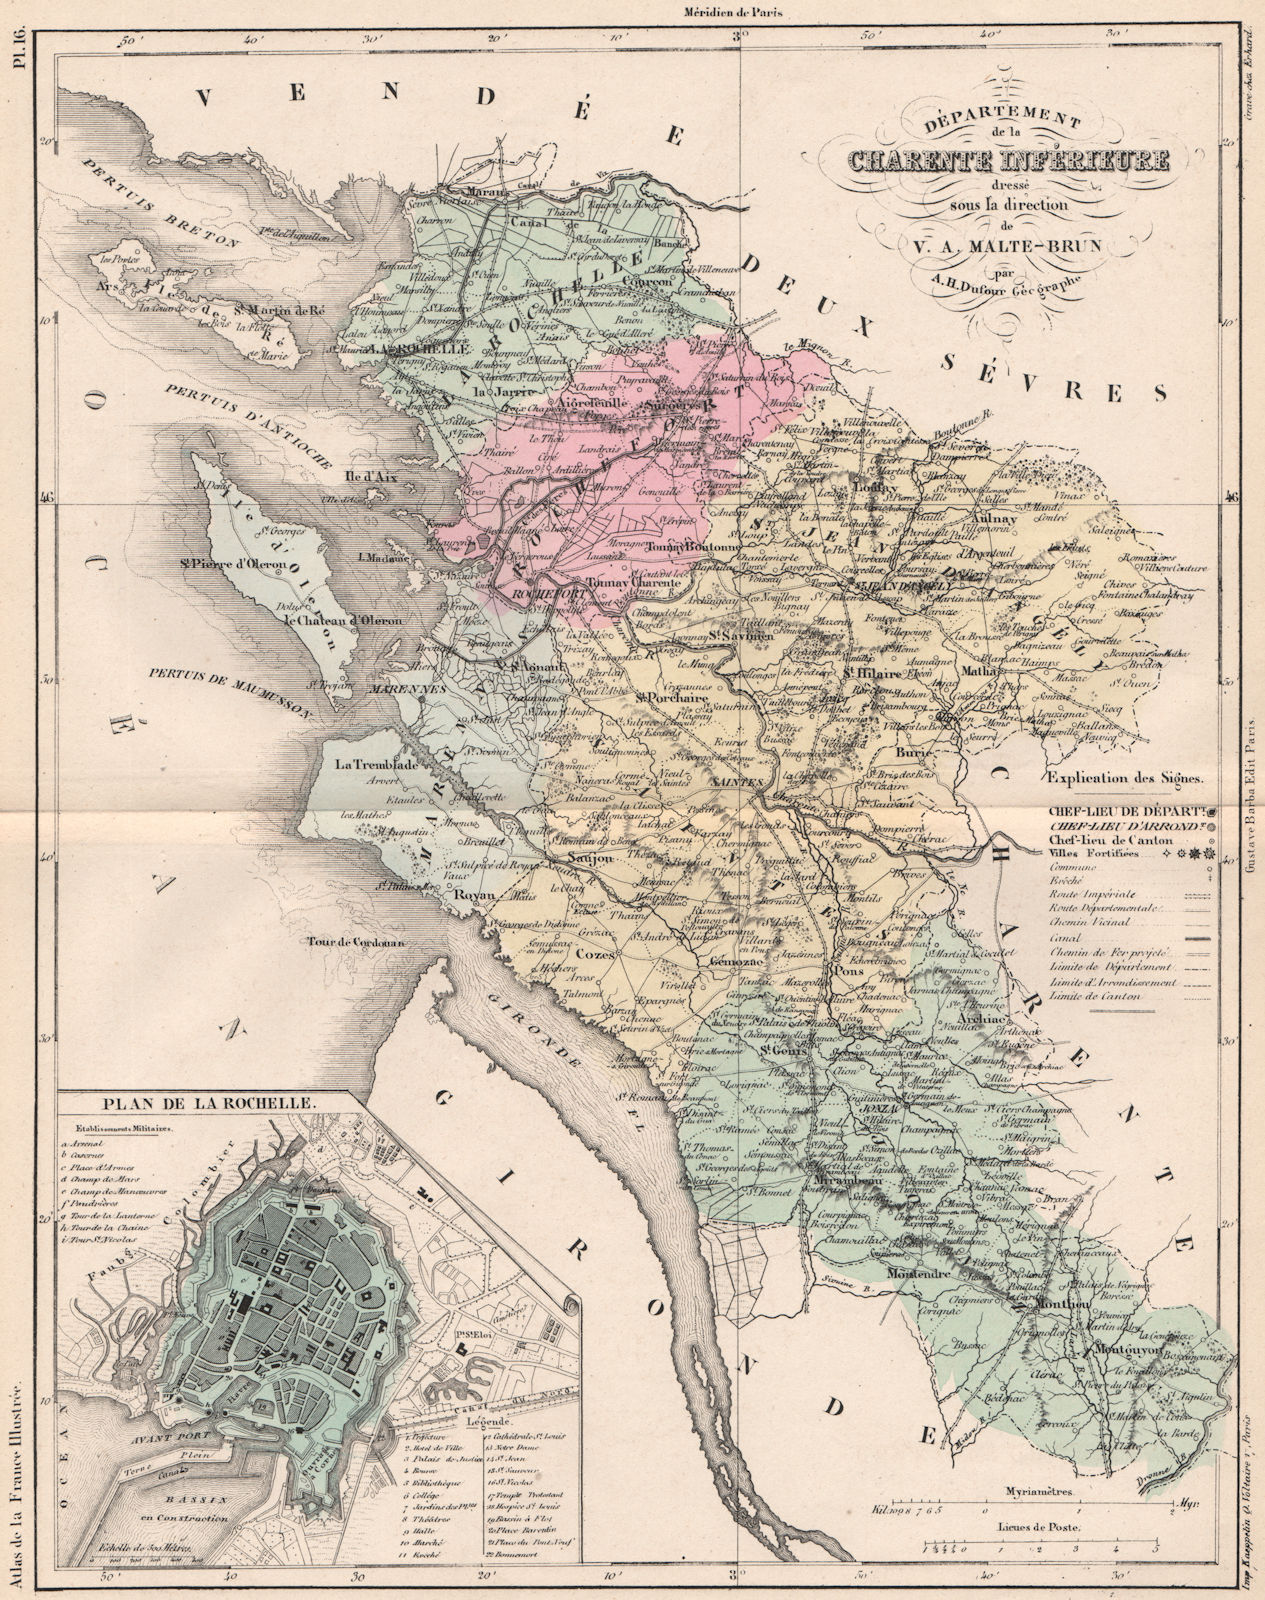 CHARENTE-MARITIME. Département Ch. Inferieure. La Rochelle. MALTE-BRUN 1852 map